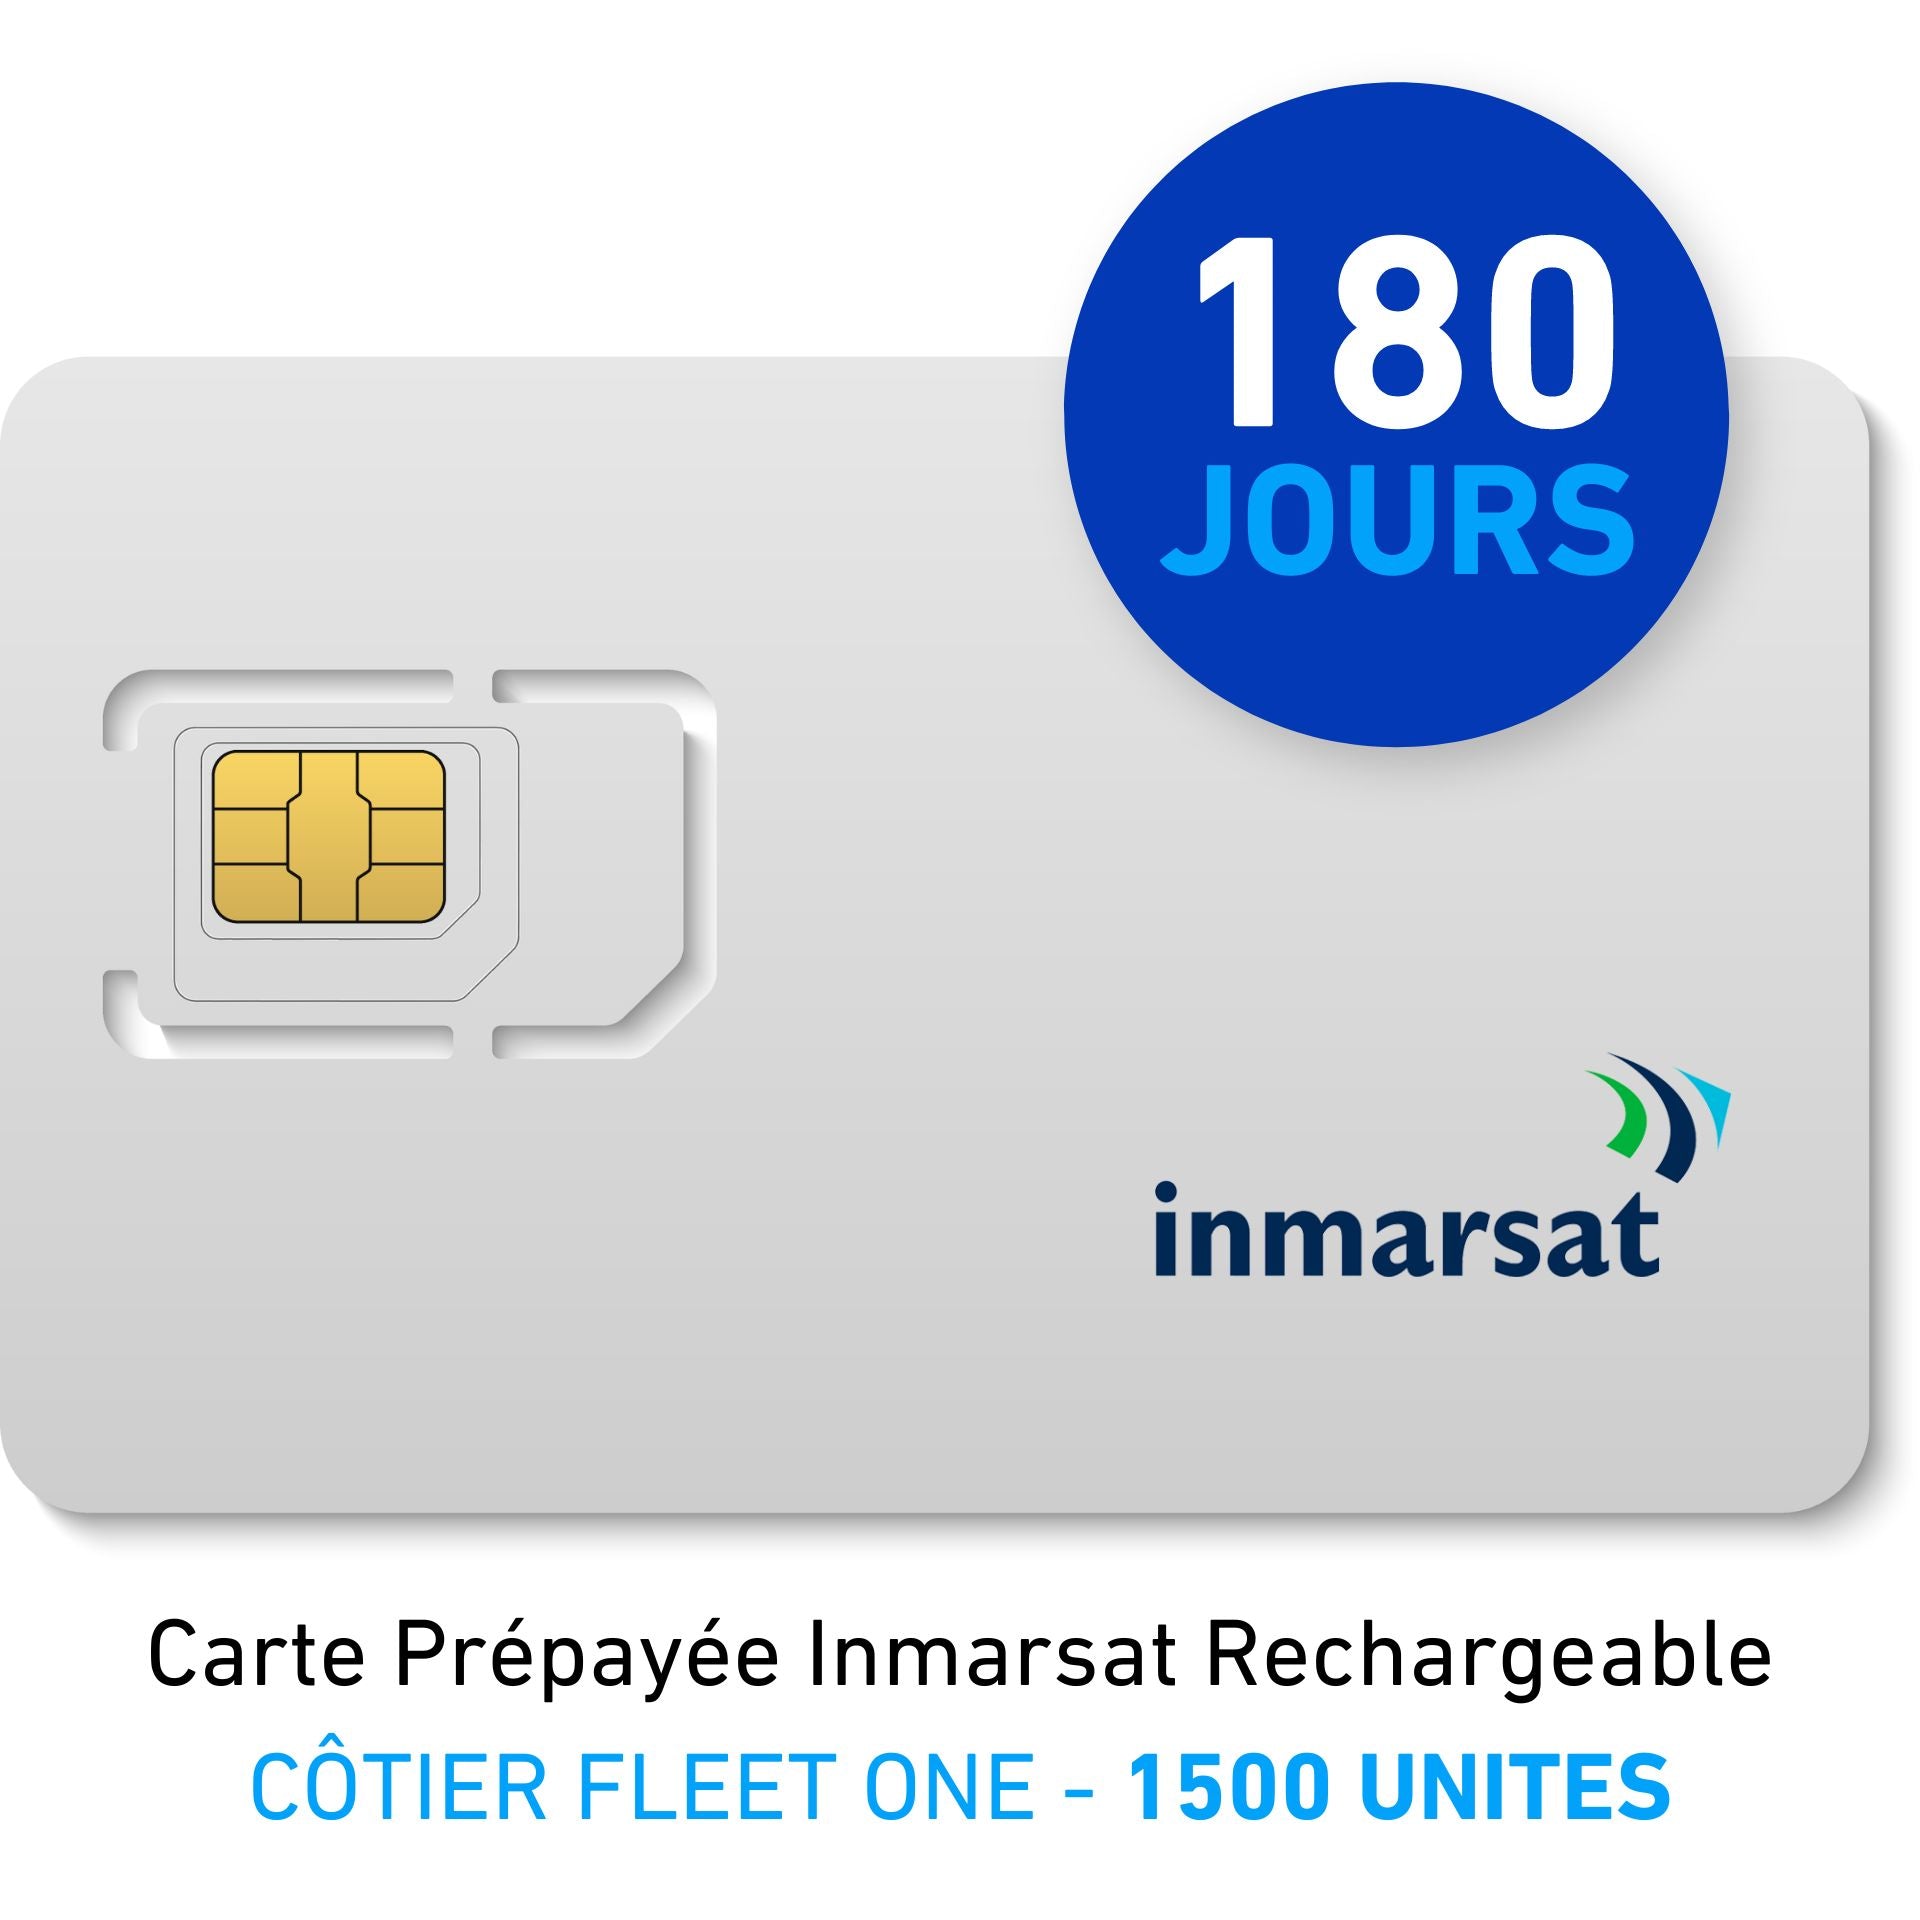 INMARSAT Prepaid-Karte Aufladbar CÔTIER FLEET ONE - 1500 UNITES - 180 JOURS